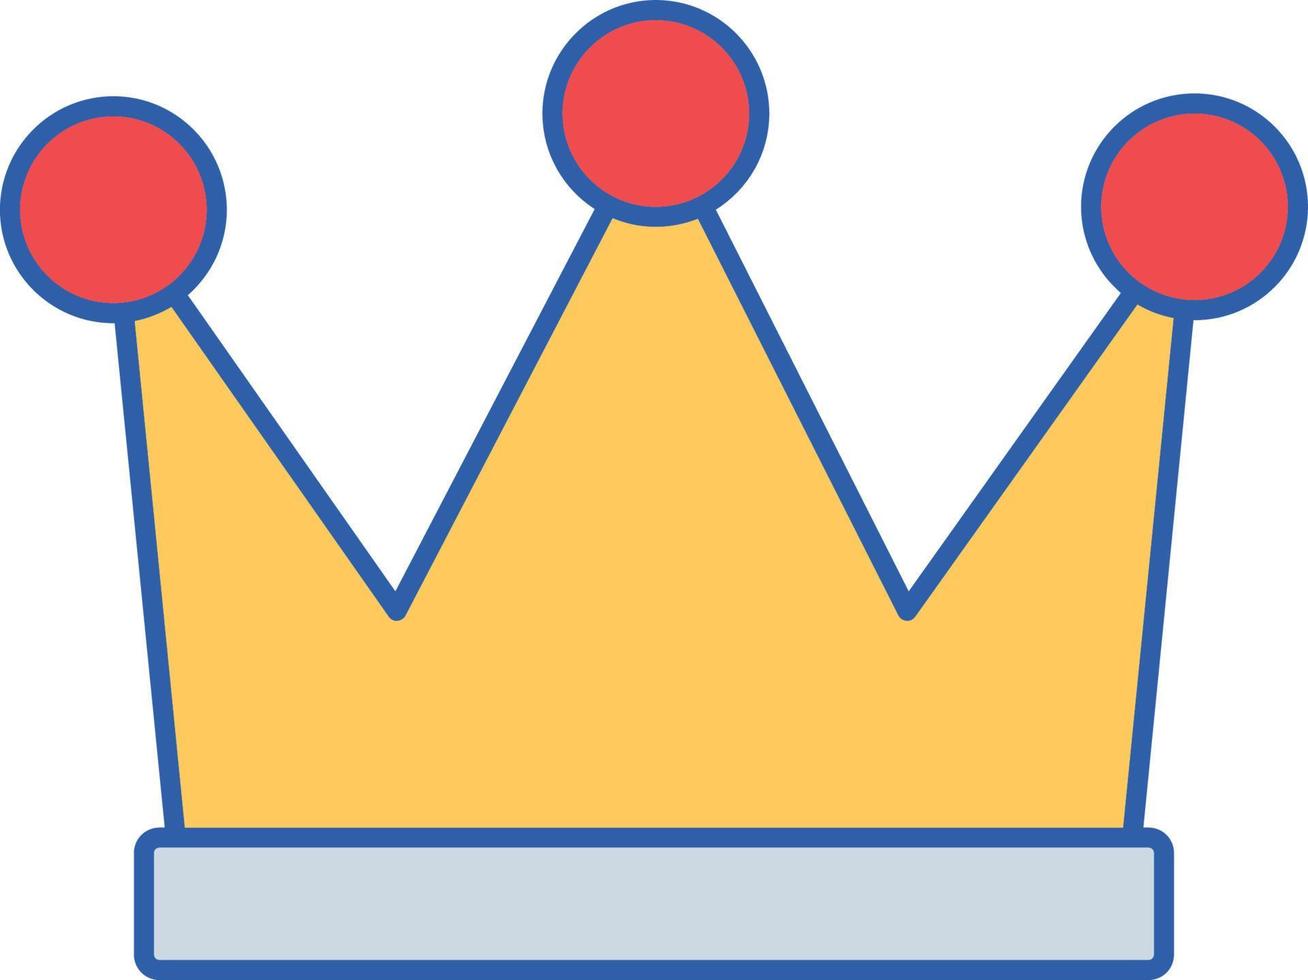 icona del vettore della corona del re che può facilmente modificare o modificare